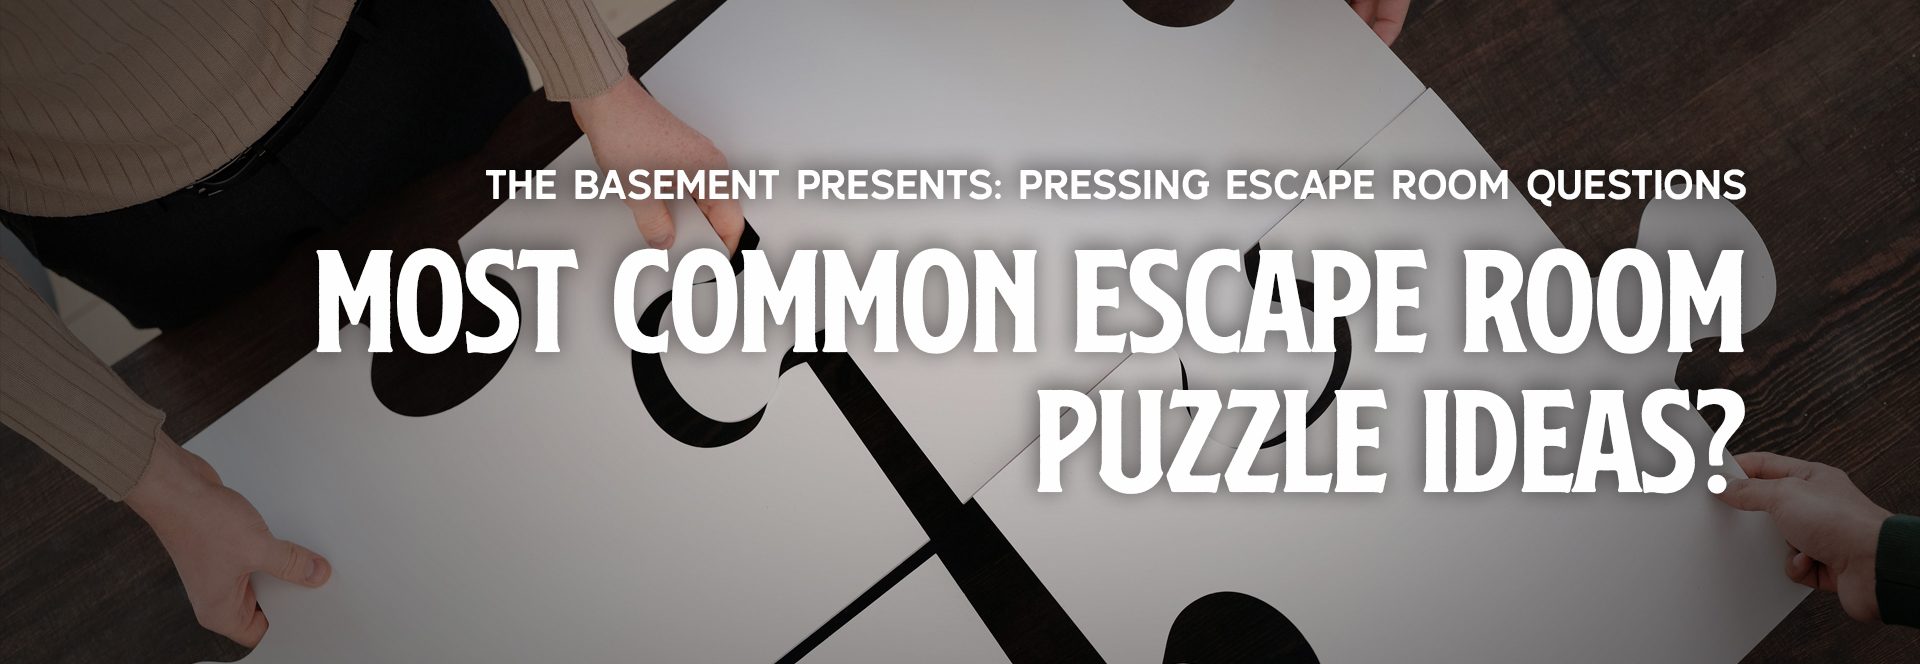 The Most Common Escape Room Puzzle Ideas